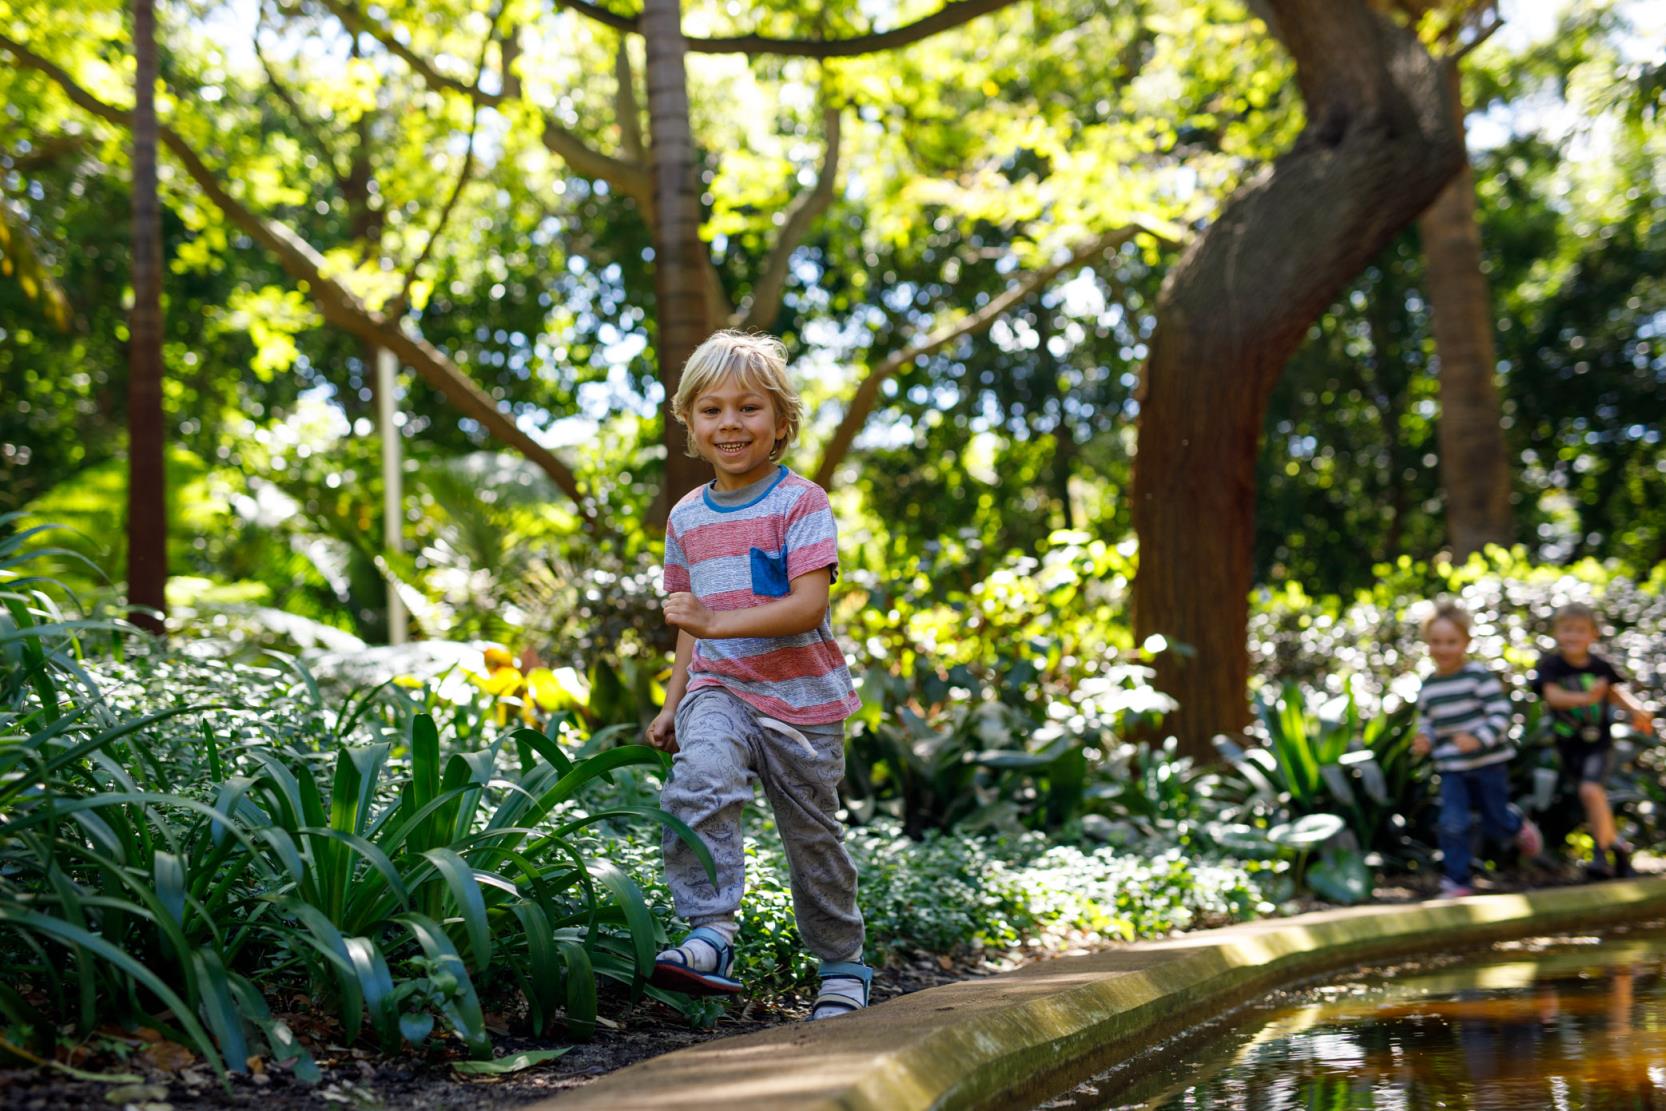 Little boy runs through green park